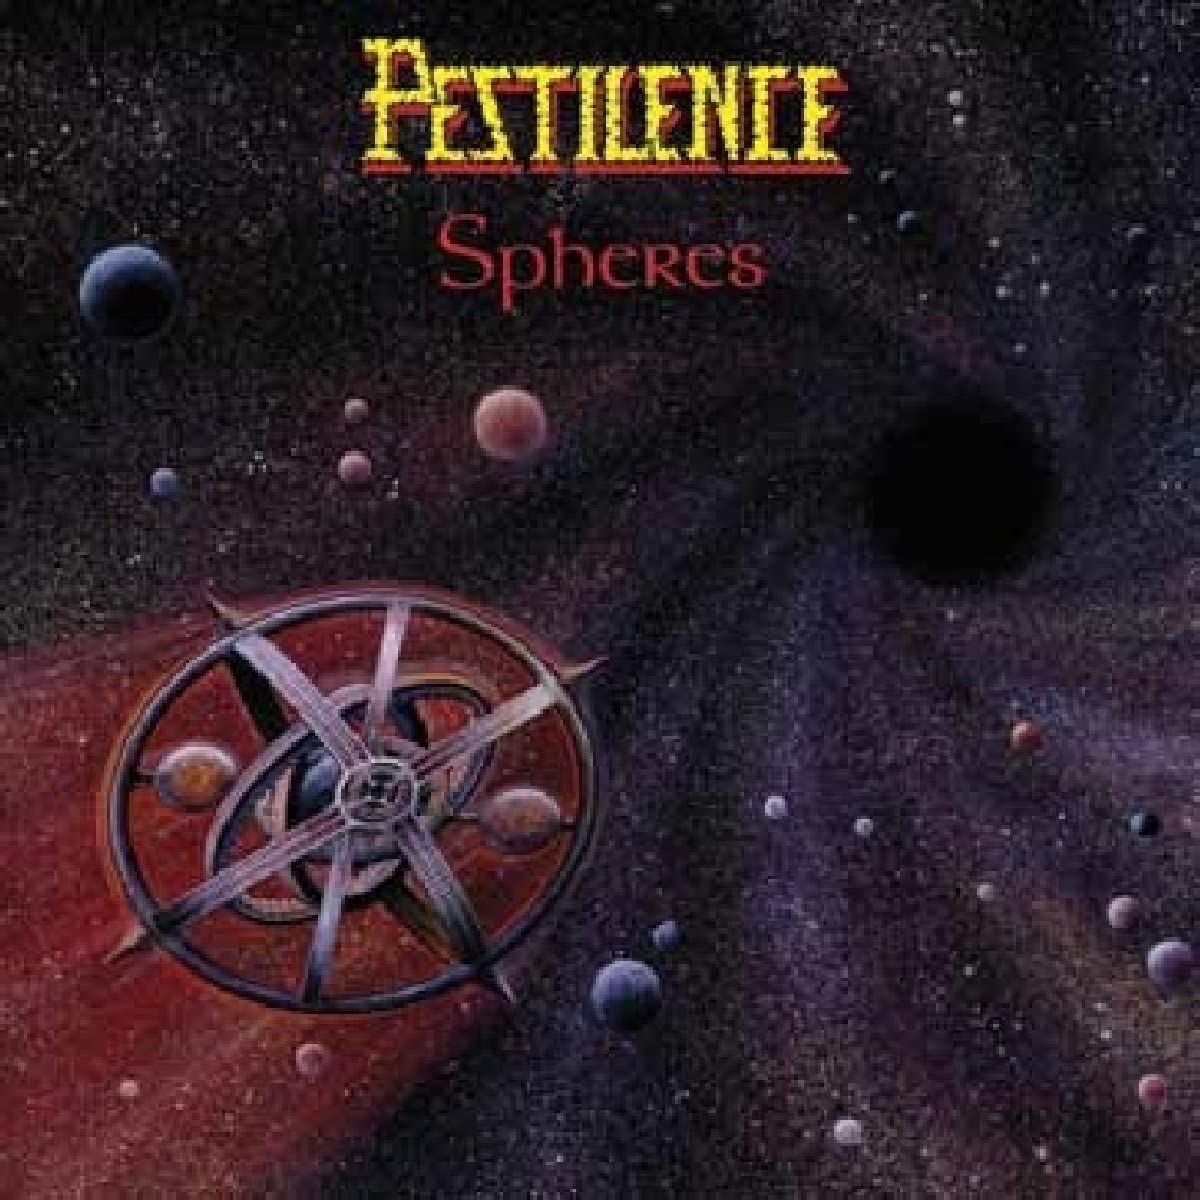 Pestilence - Spheres - 2CD